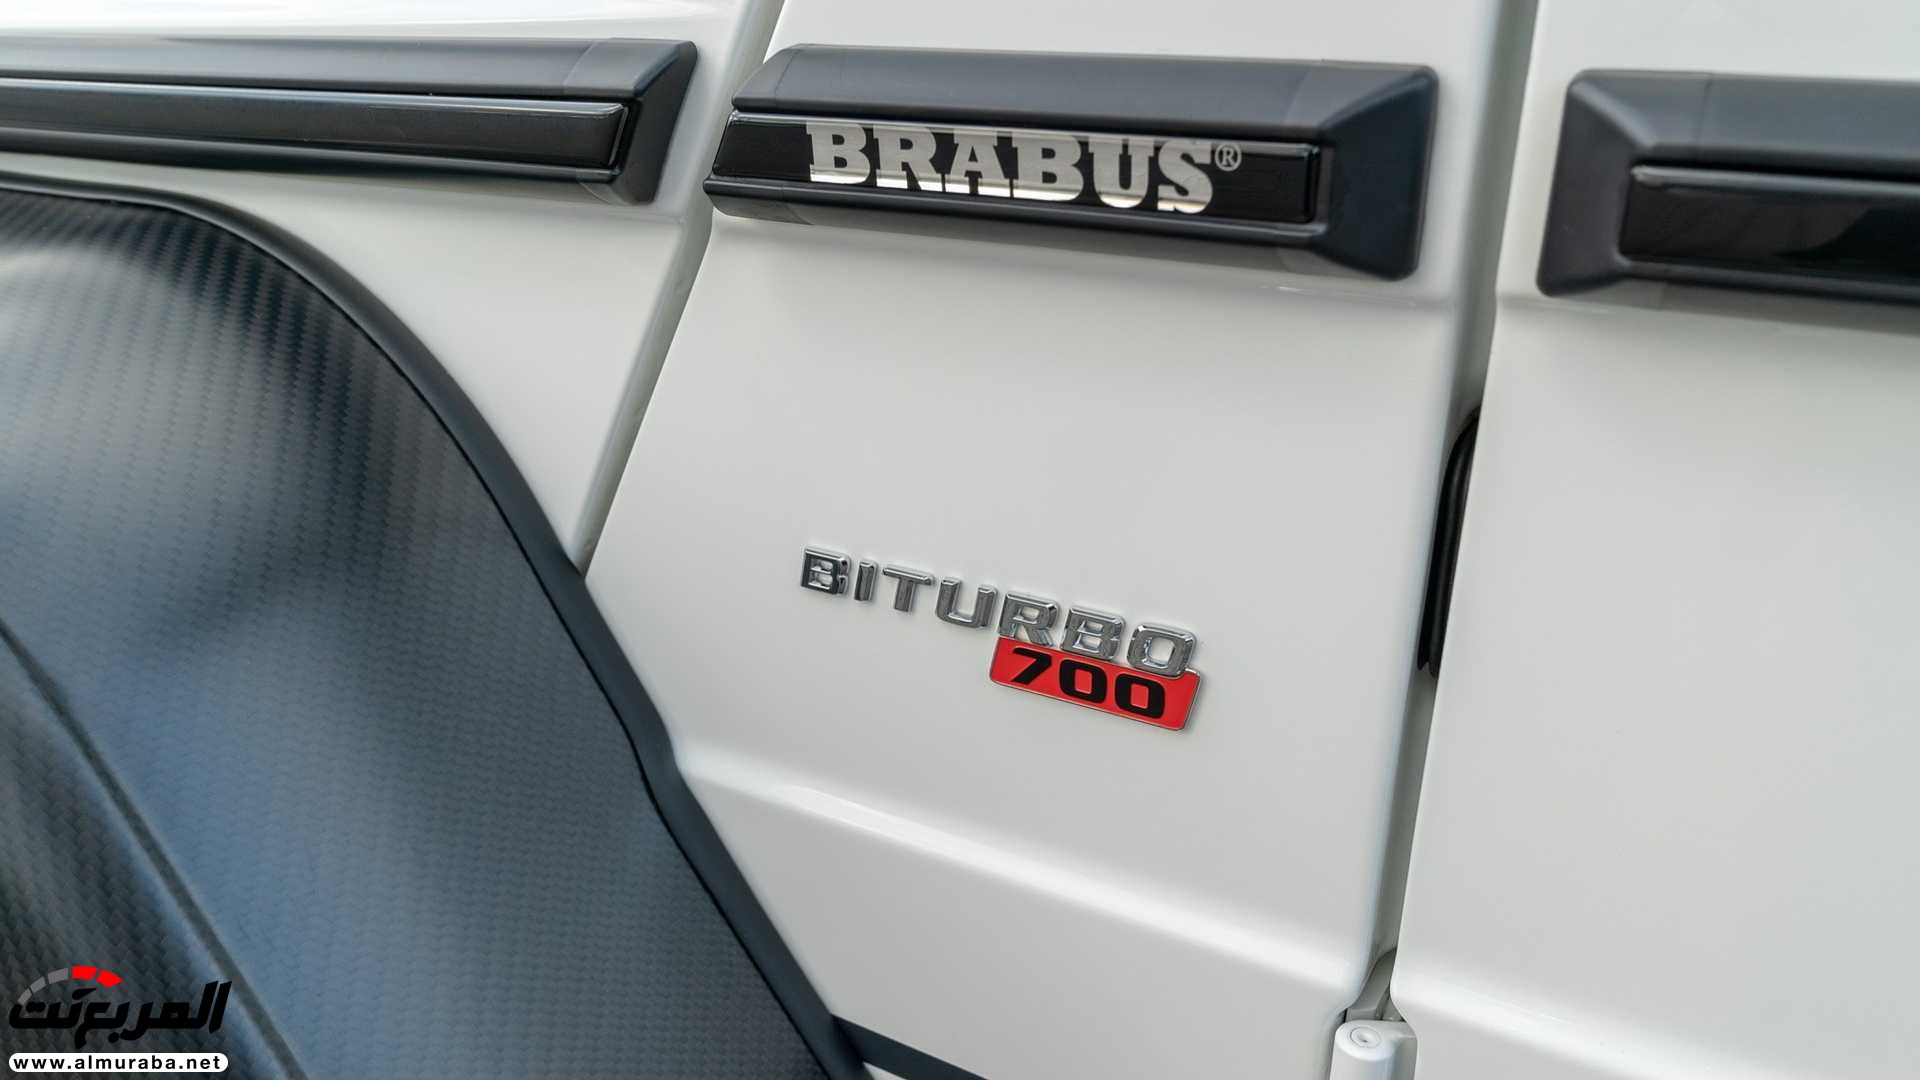 مرسيدس G63 AMG الإصدر الأخير برابوس 700 4x4² تنطلق رسمياً 12